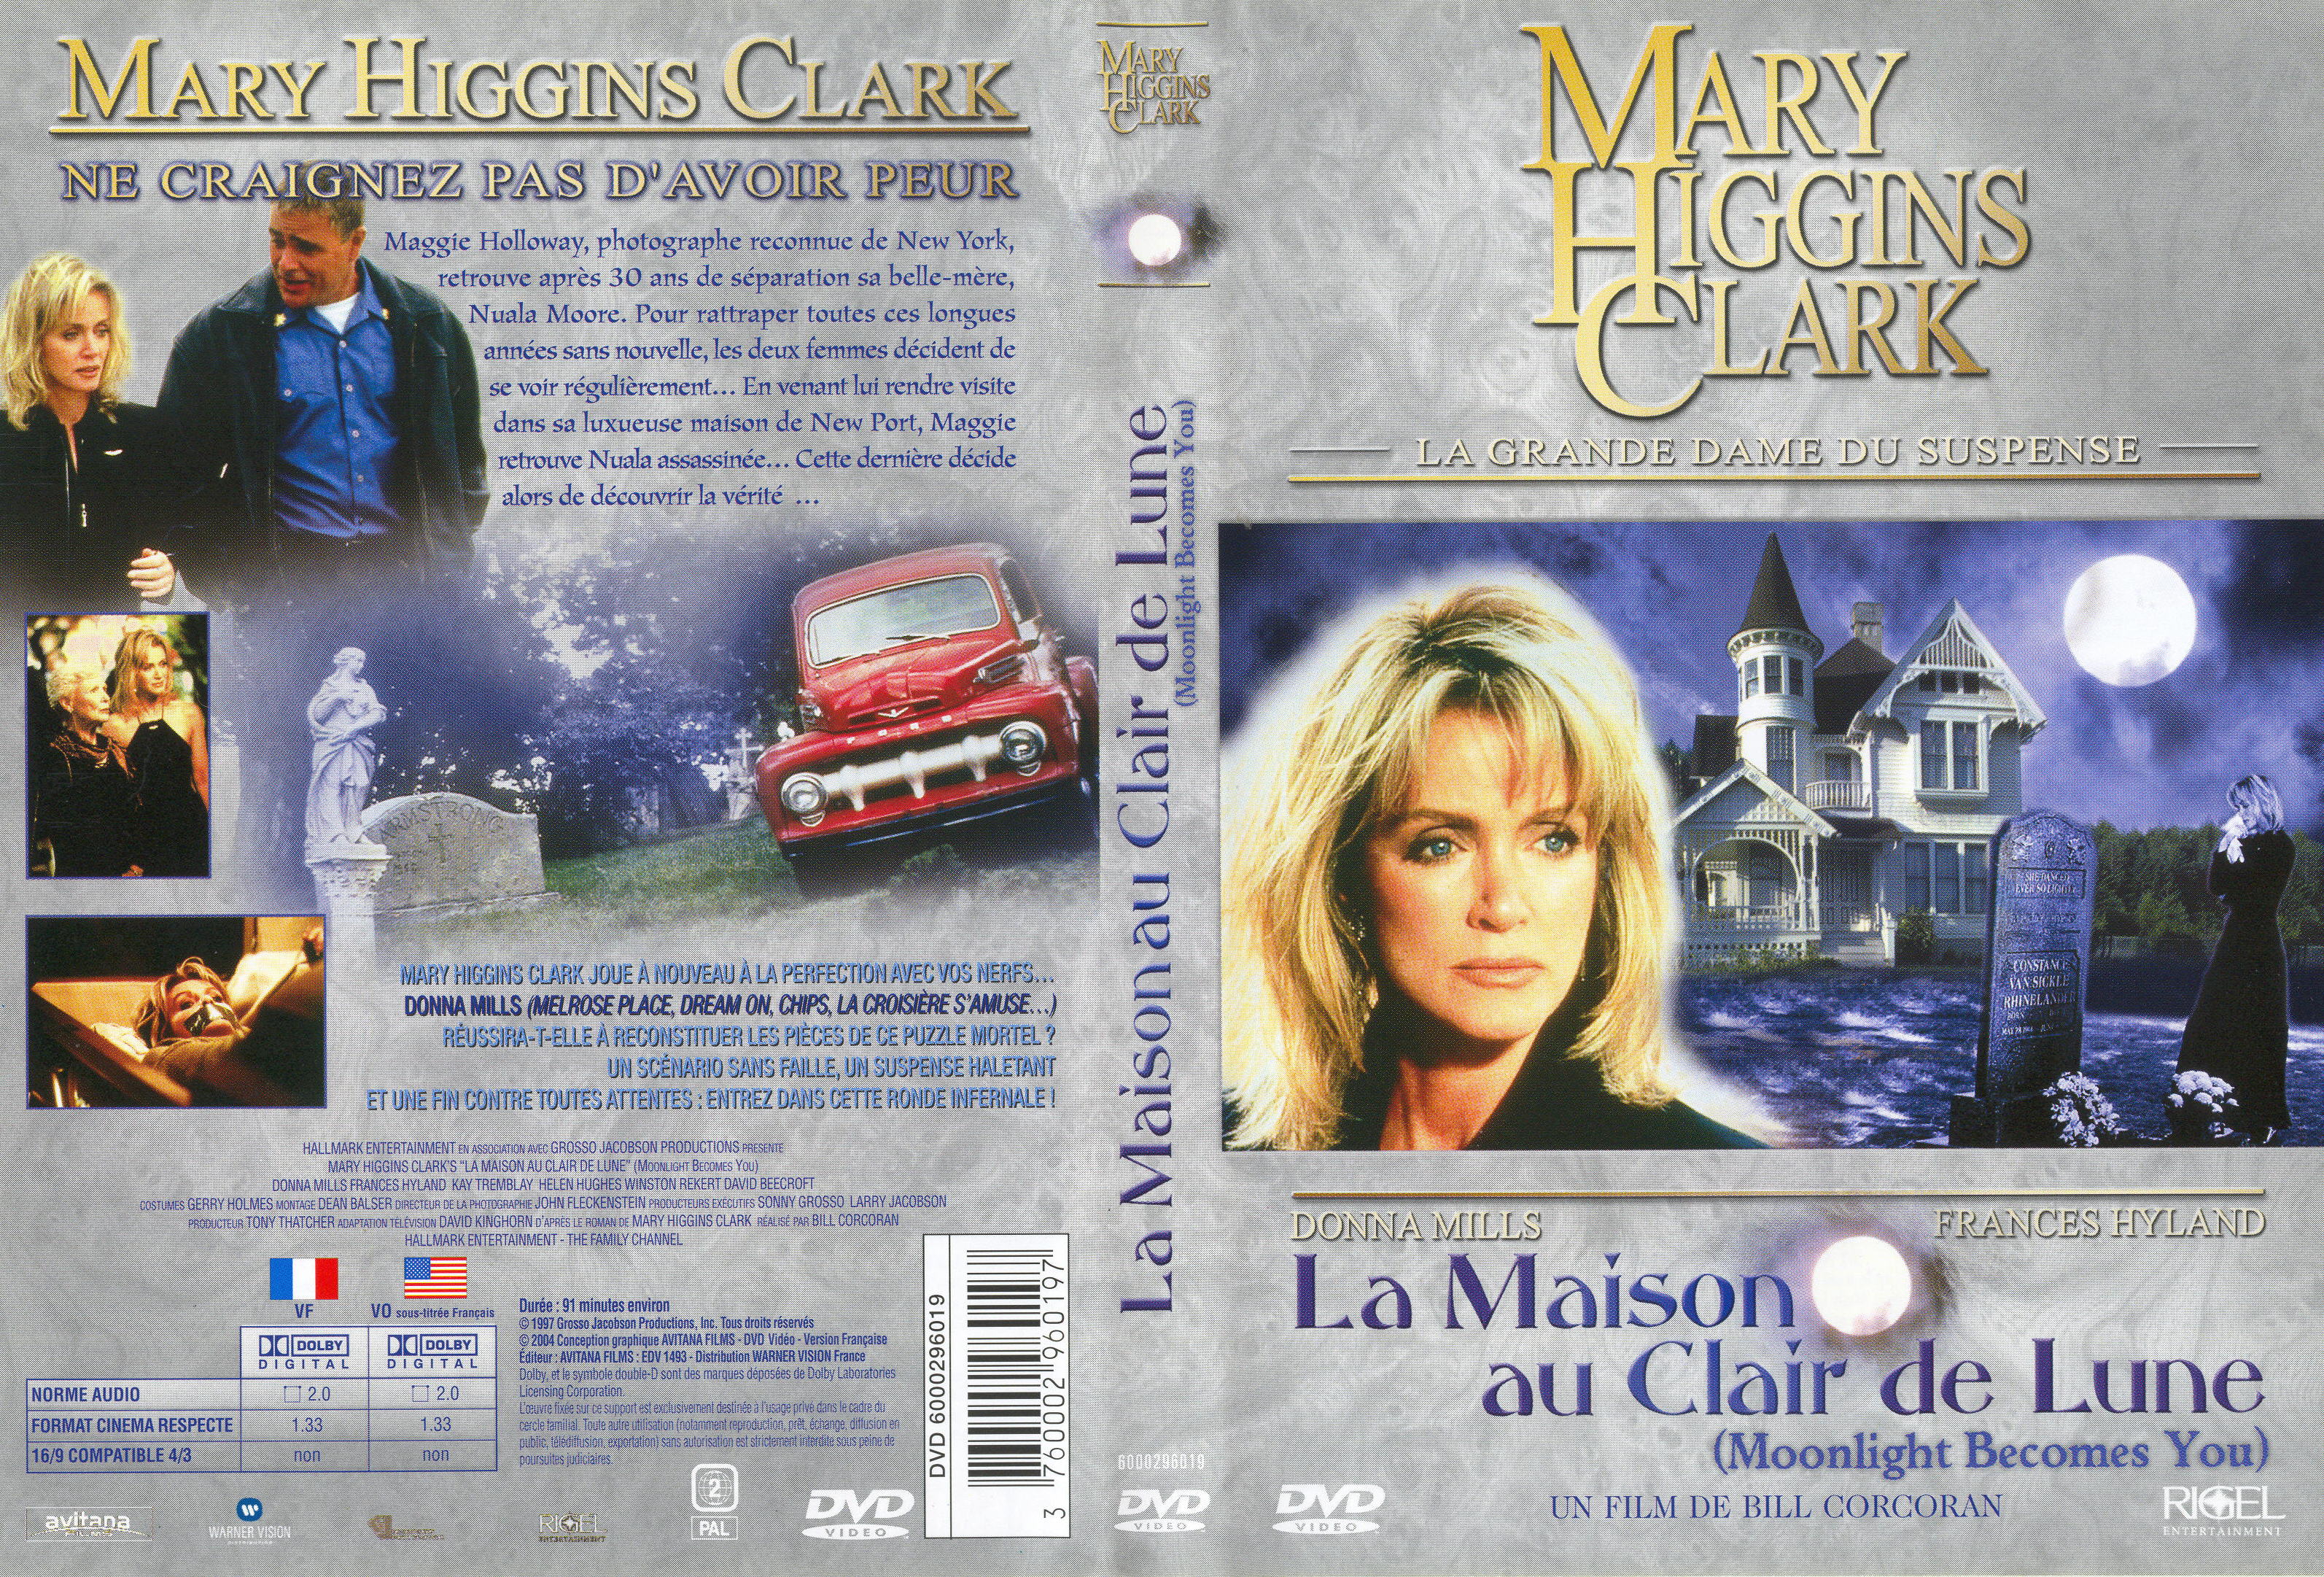 Jaquette DVD de Mary Higgins Clark - La maison au clair de lune - Cinéma Passion3187 x 2162